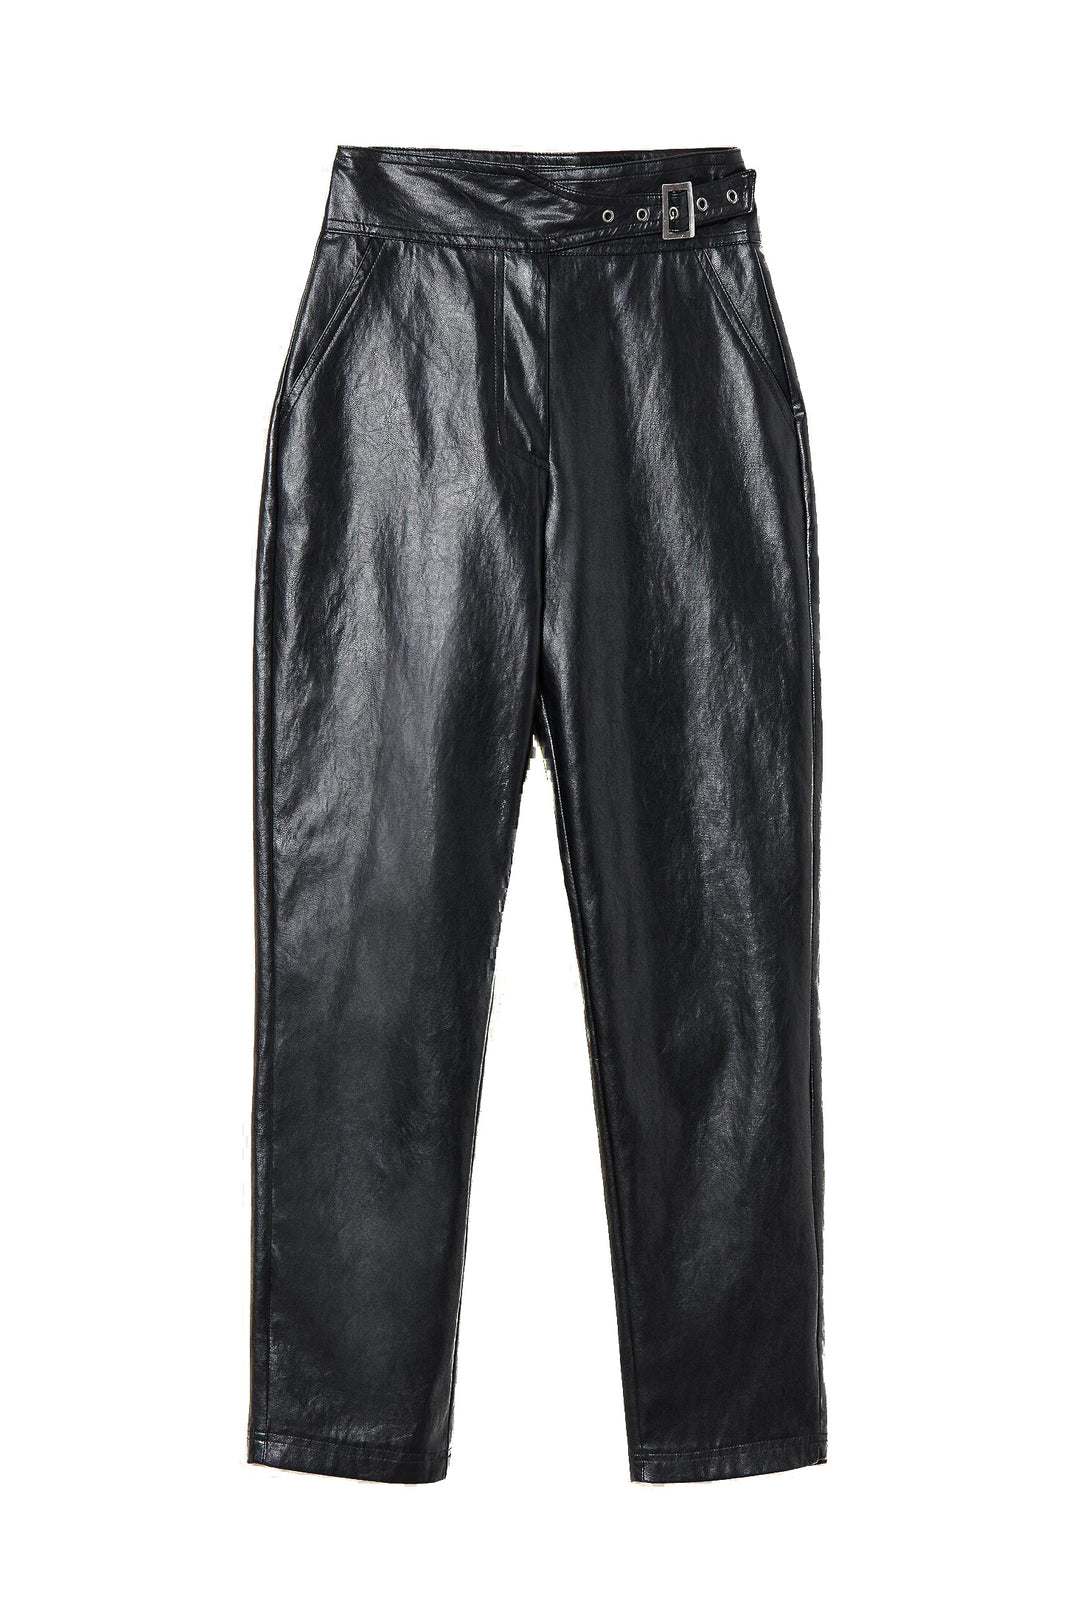 TWINSET Pantaloni neri effetto pelle con fibbia - Mancinelli 1954